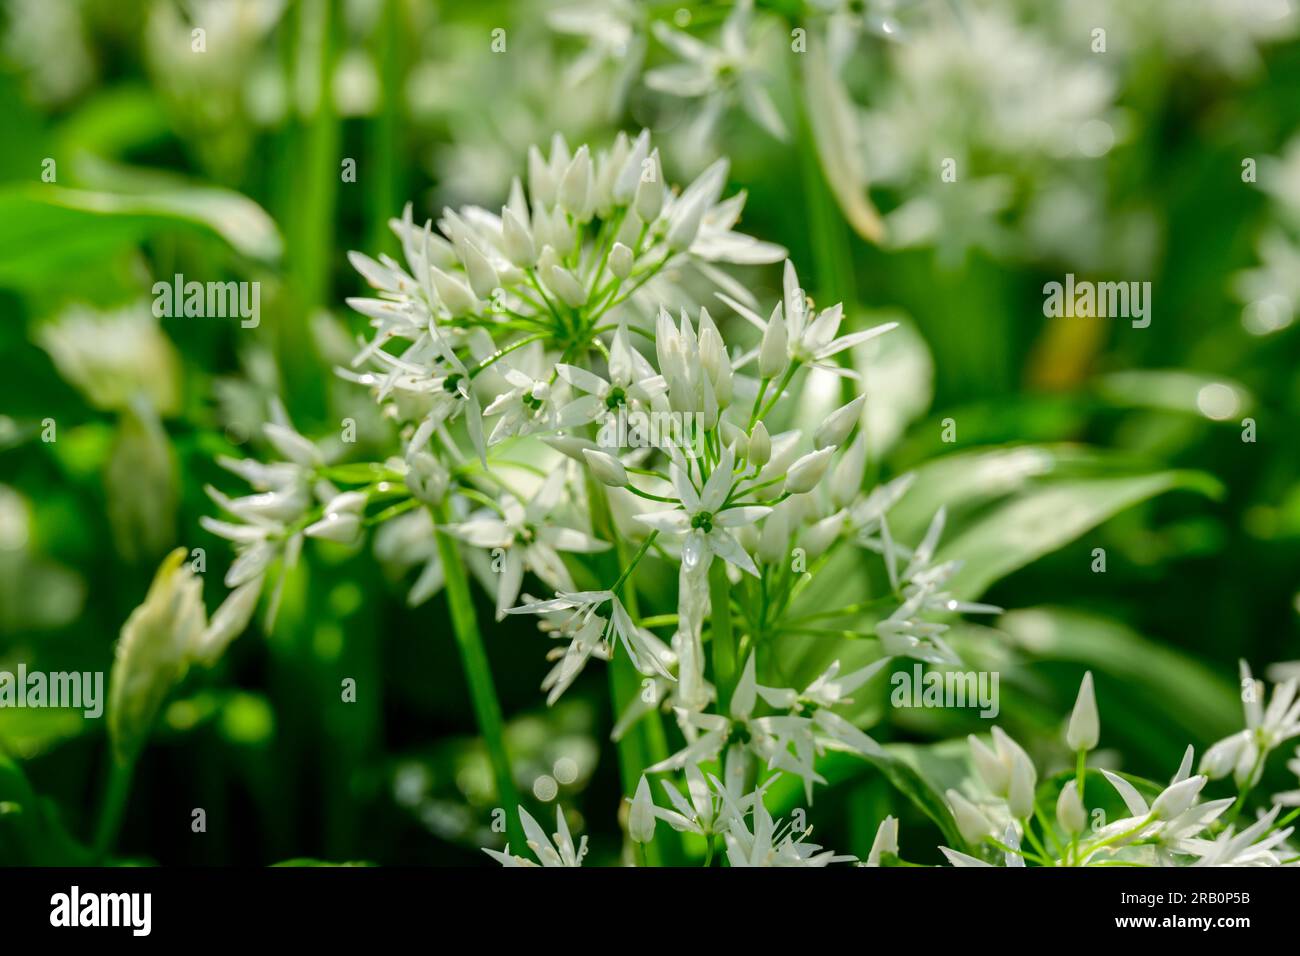 Aglio selvatico (Allium ursinum), specie vegetali del genere Allium. Foto Stock